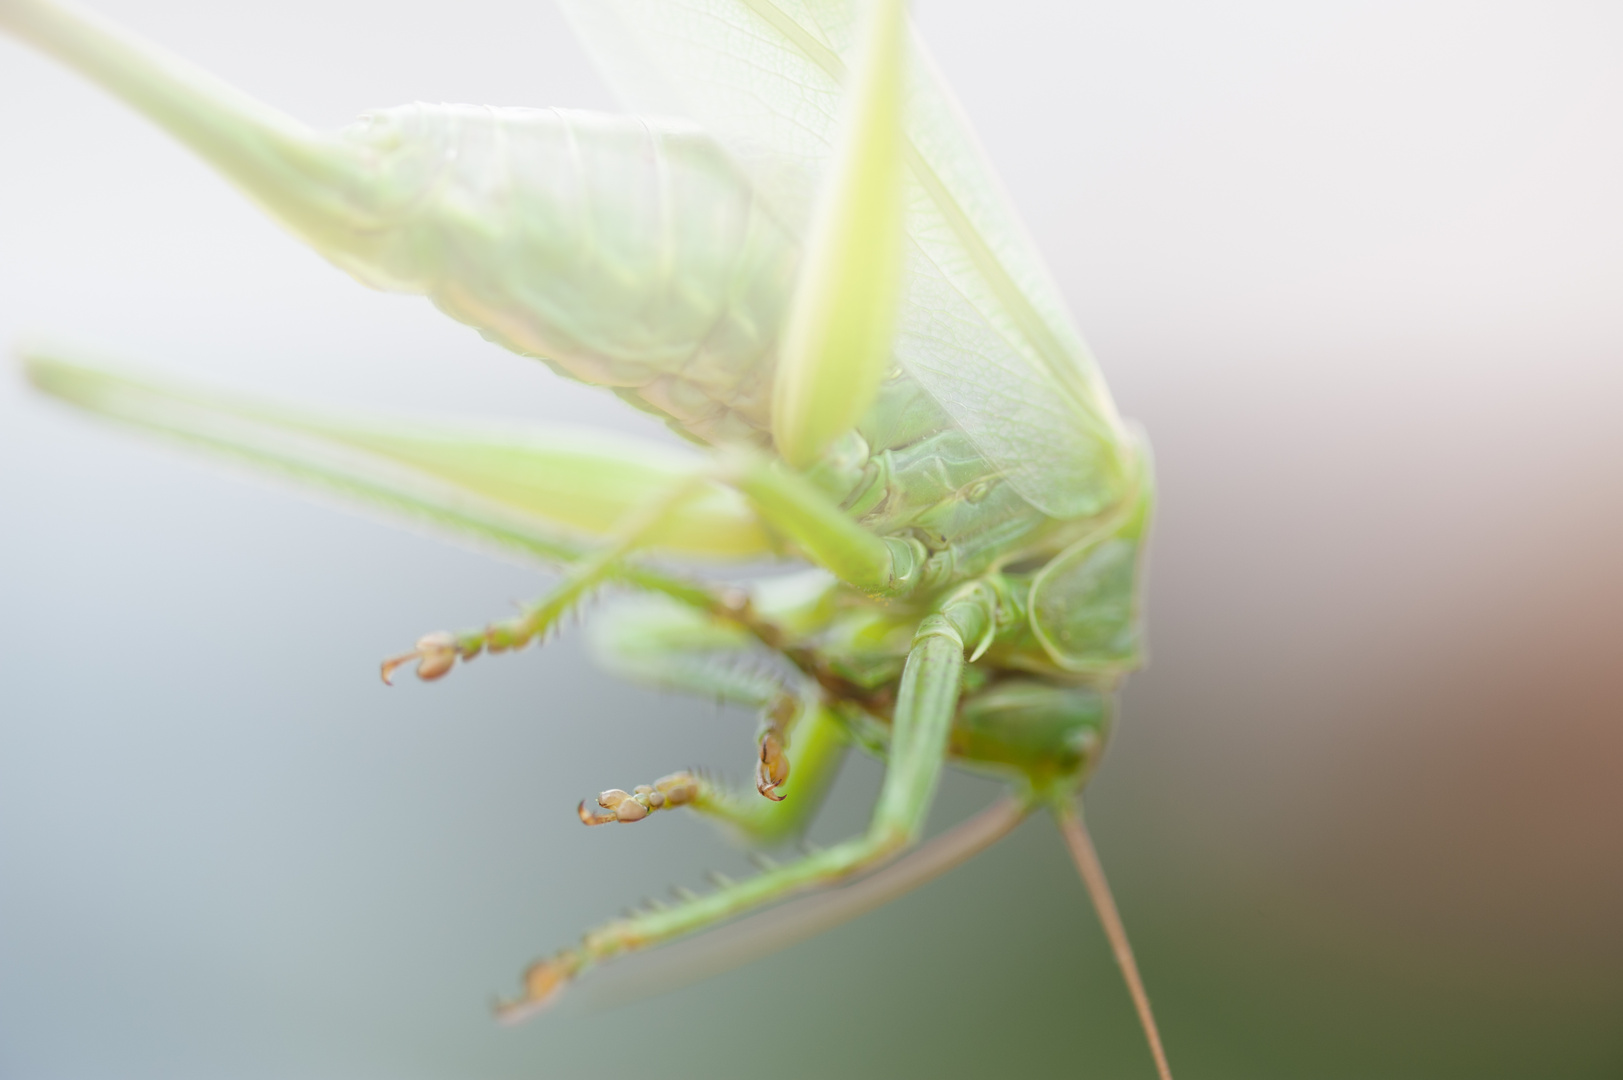 Grasshopper#3